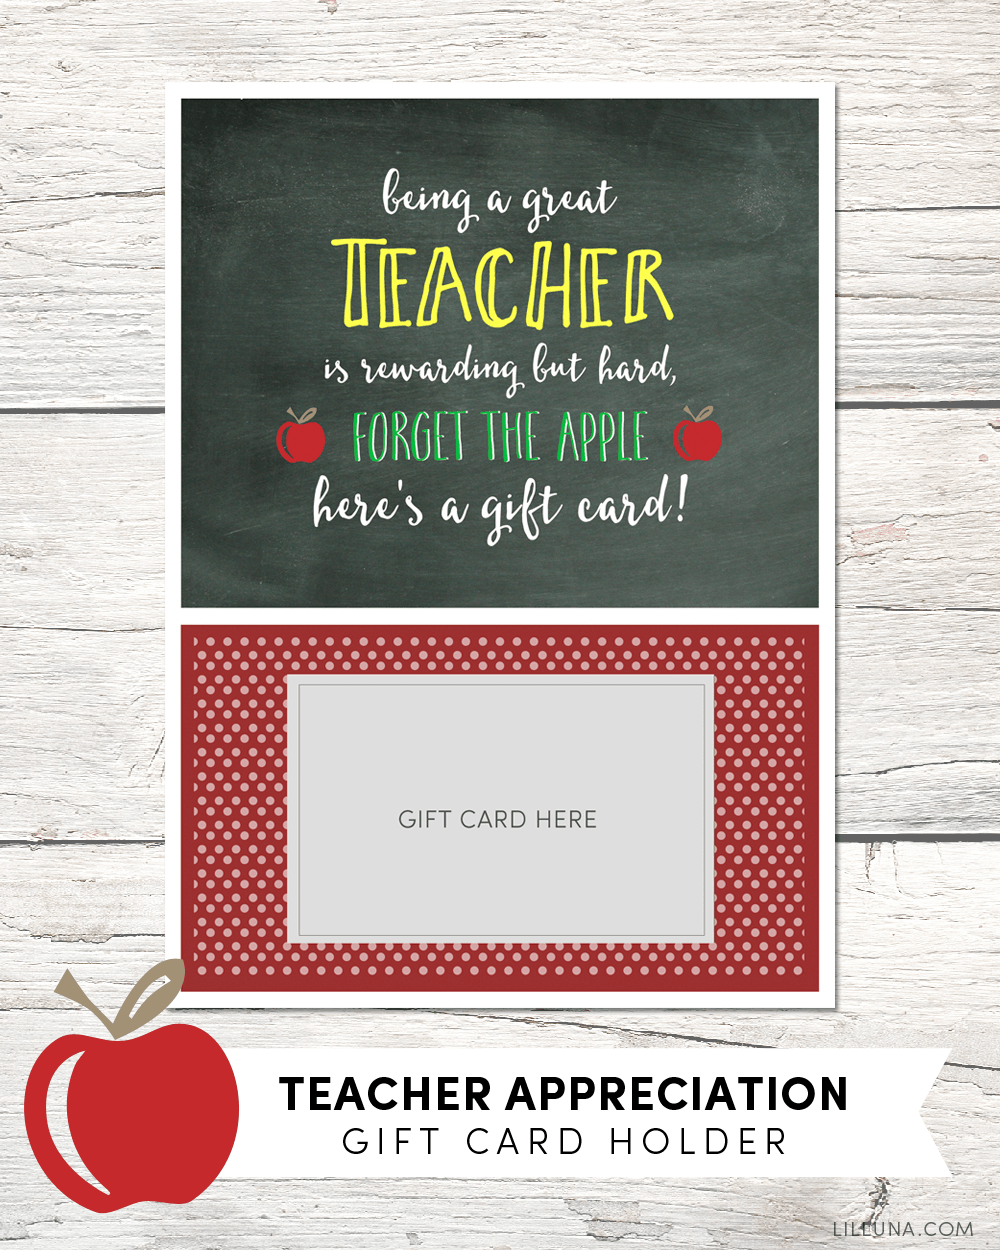 Gift Card Holder for Teachers